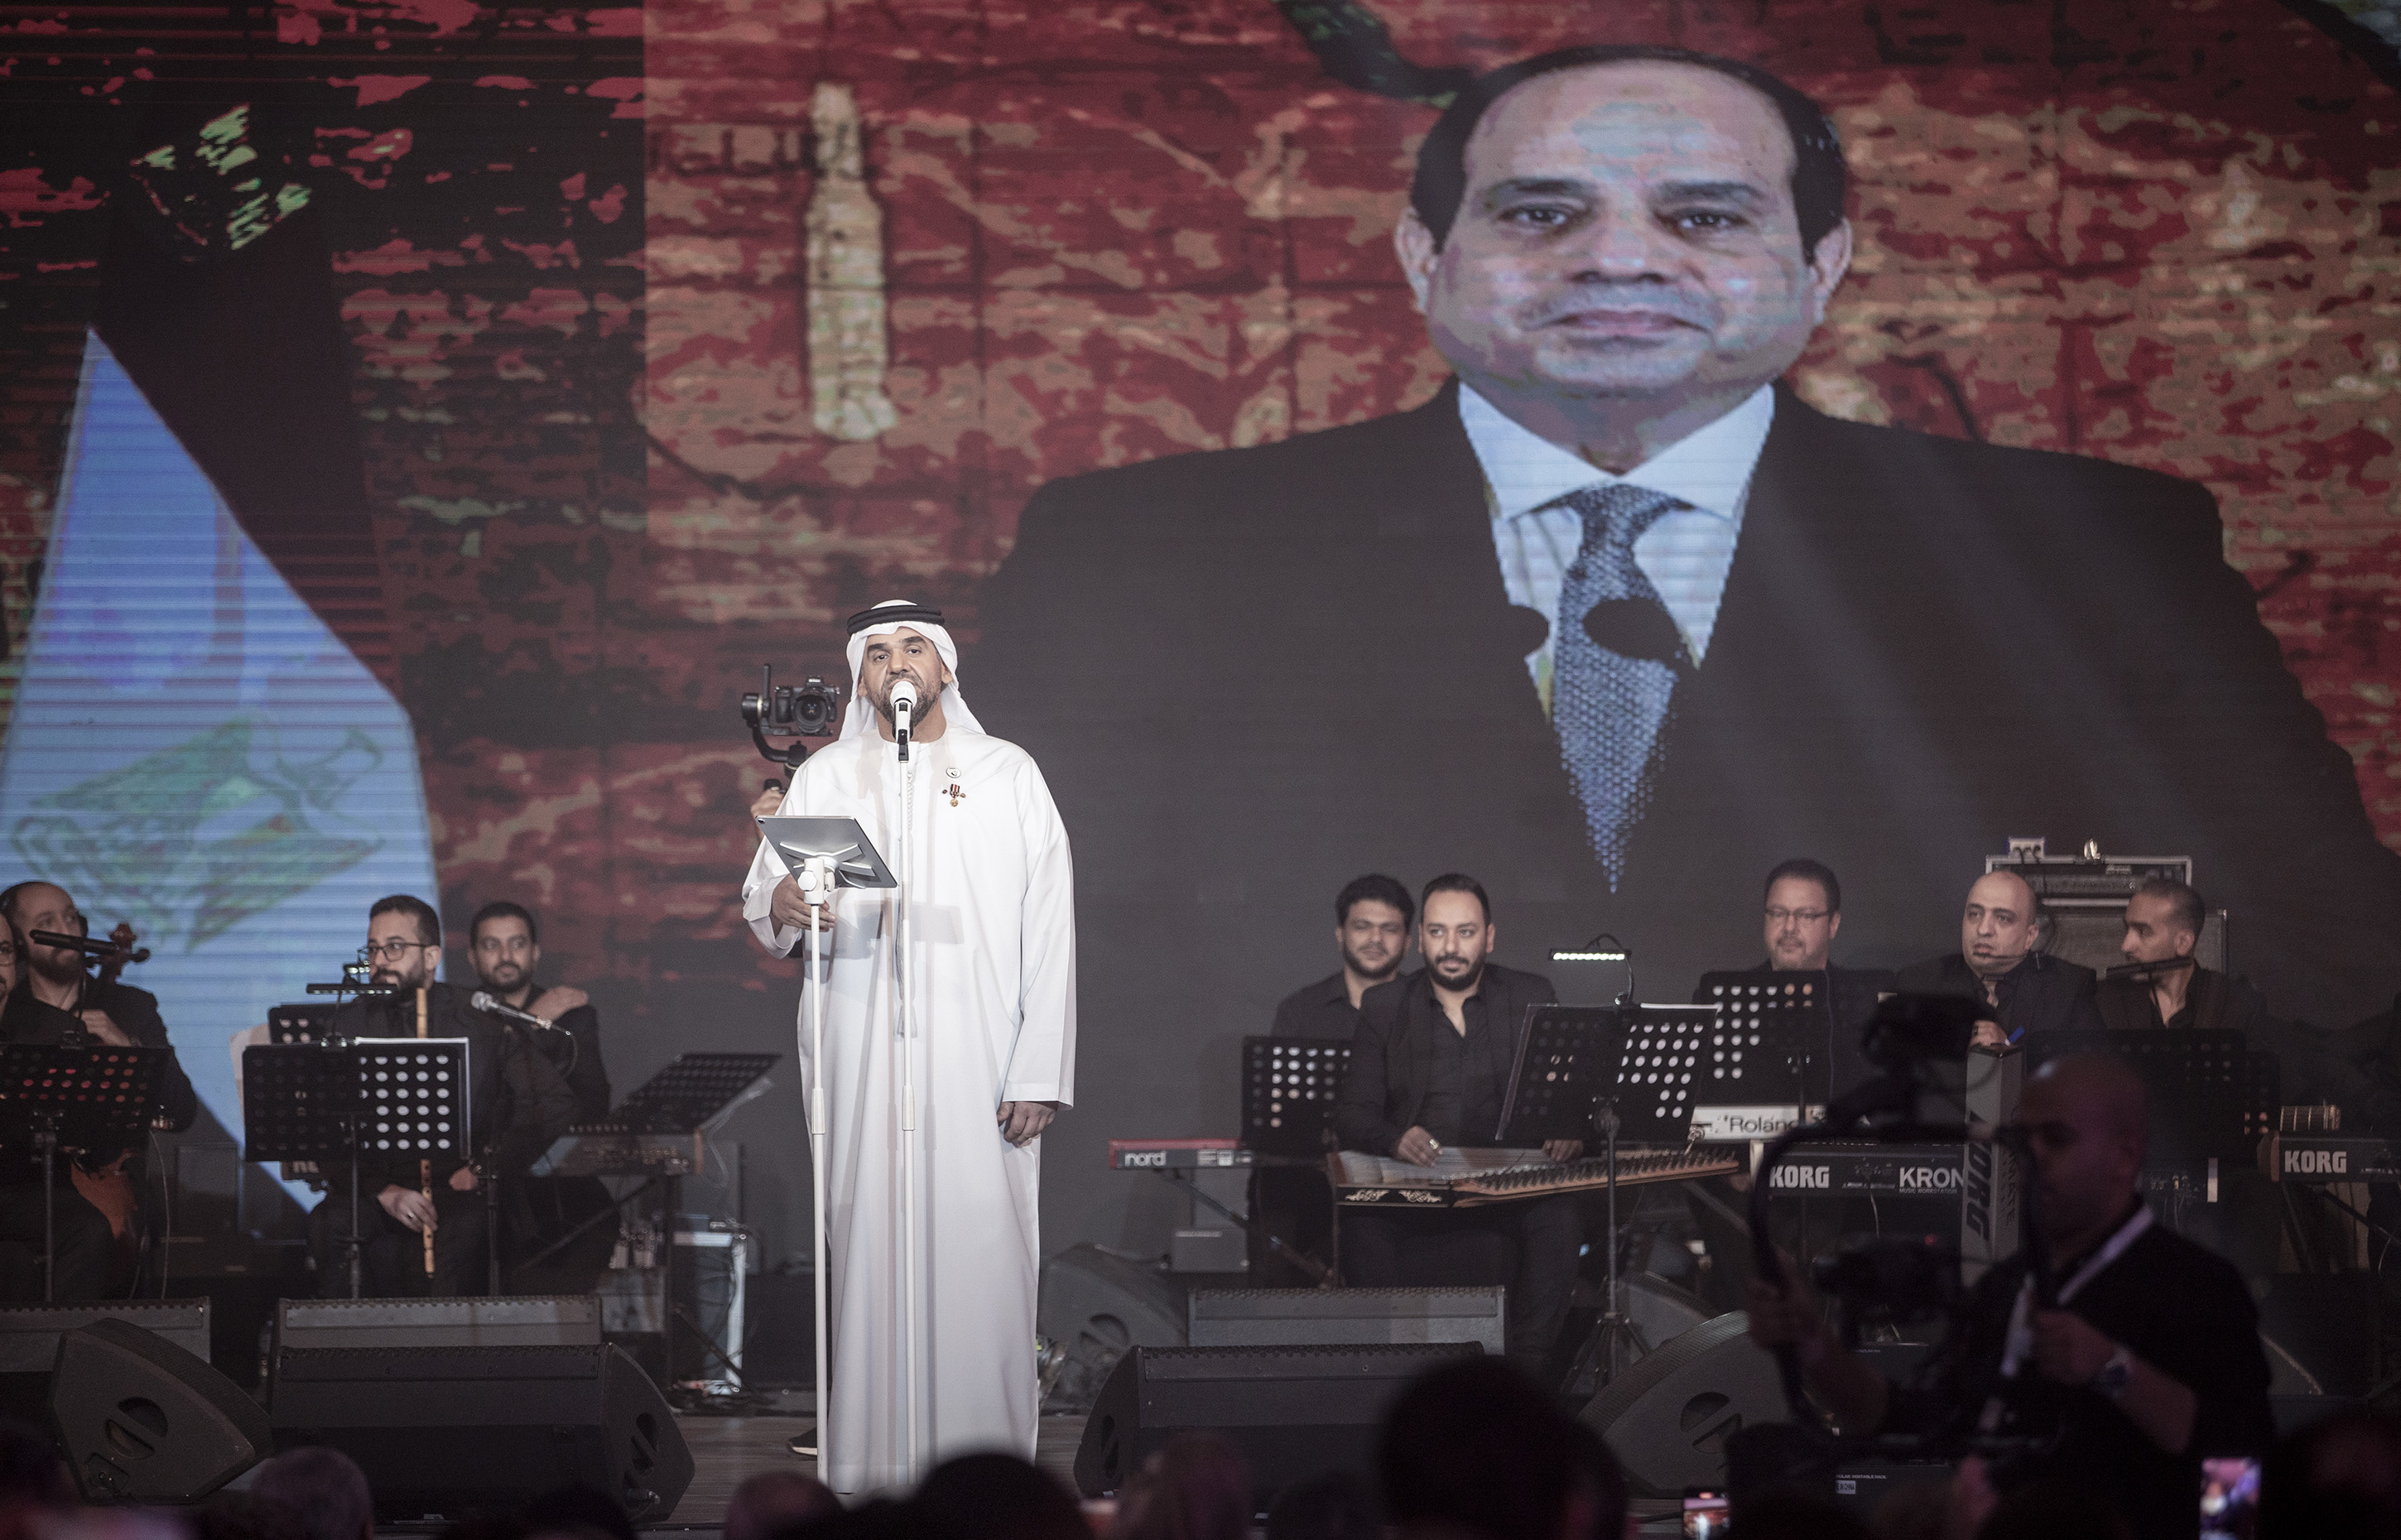 حسين الجسمي يحتفل بذكرى ثورة 30 يونيو مع الجمهور المصري في القاهرة